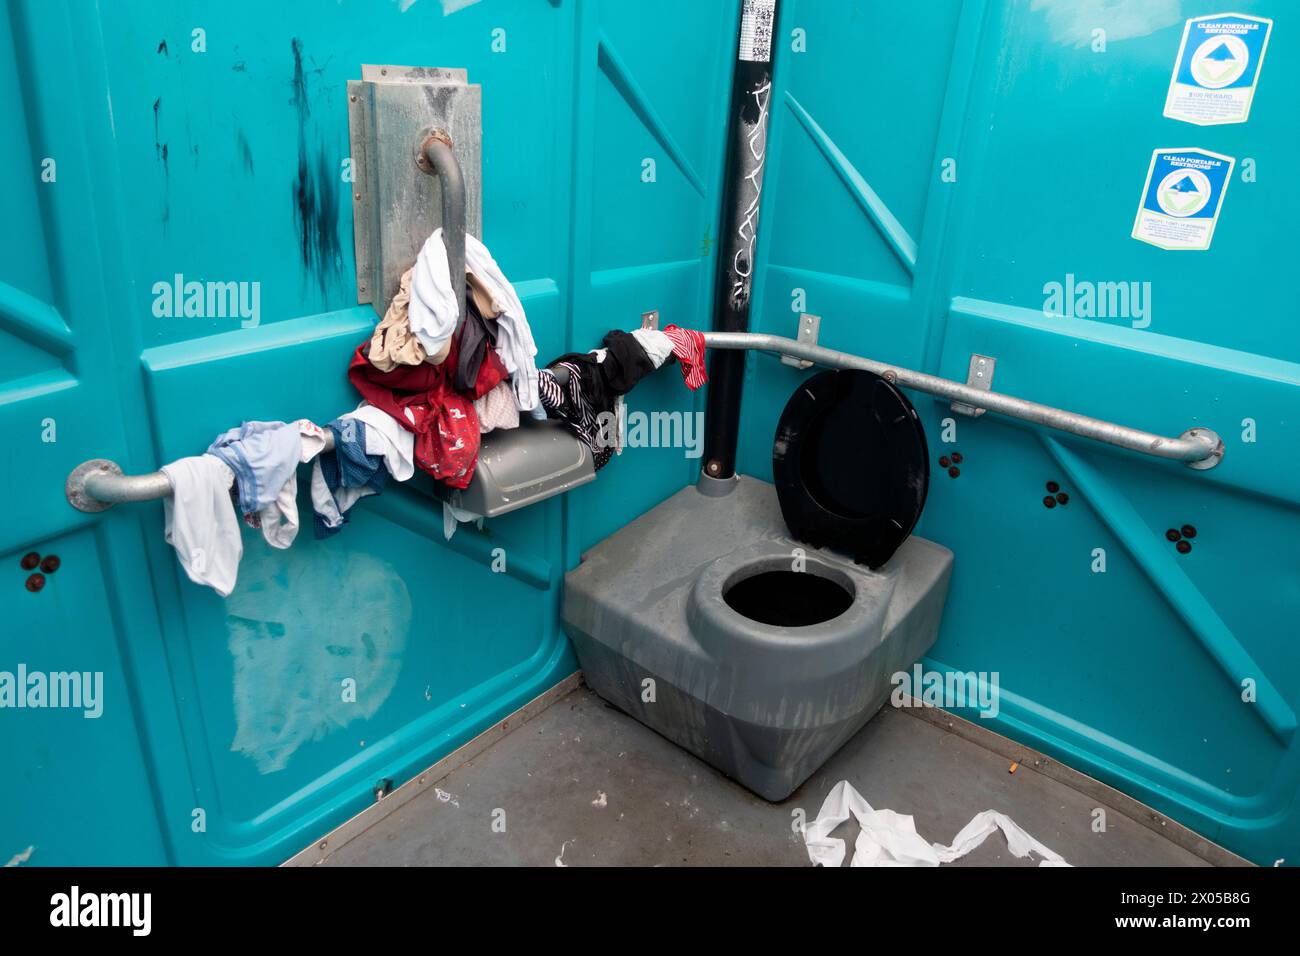 El interior de un biffy al aire libre con el lavado de alguien colgando para secar. Tal vez una lavandería para personas sin hogar. Minneapolis Minnesota MN EE.UU. Foto de stock